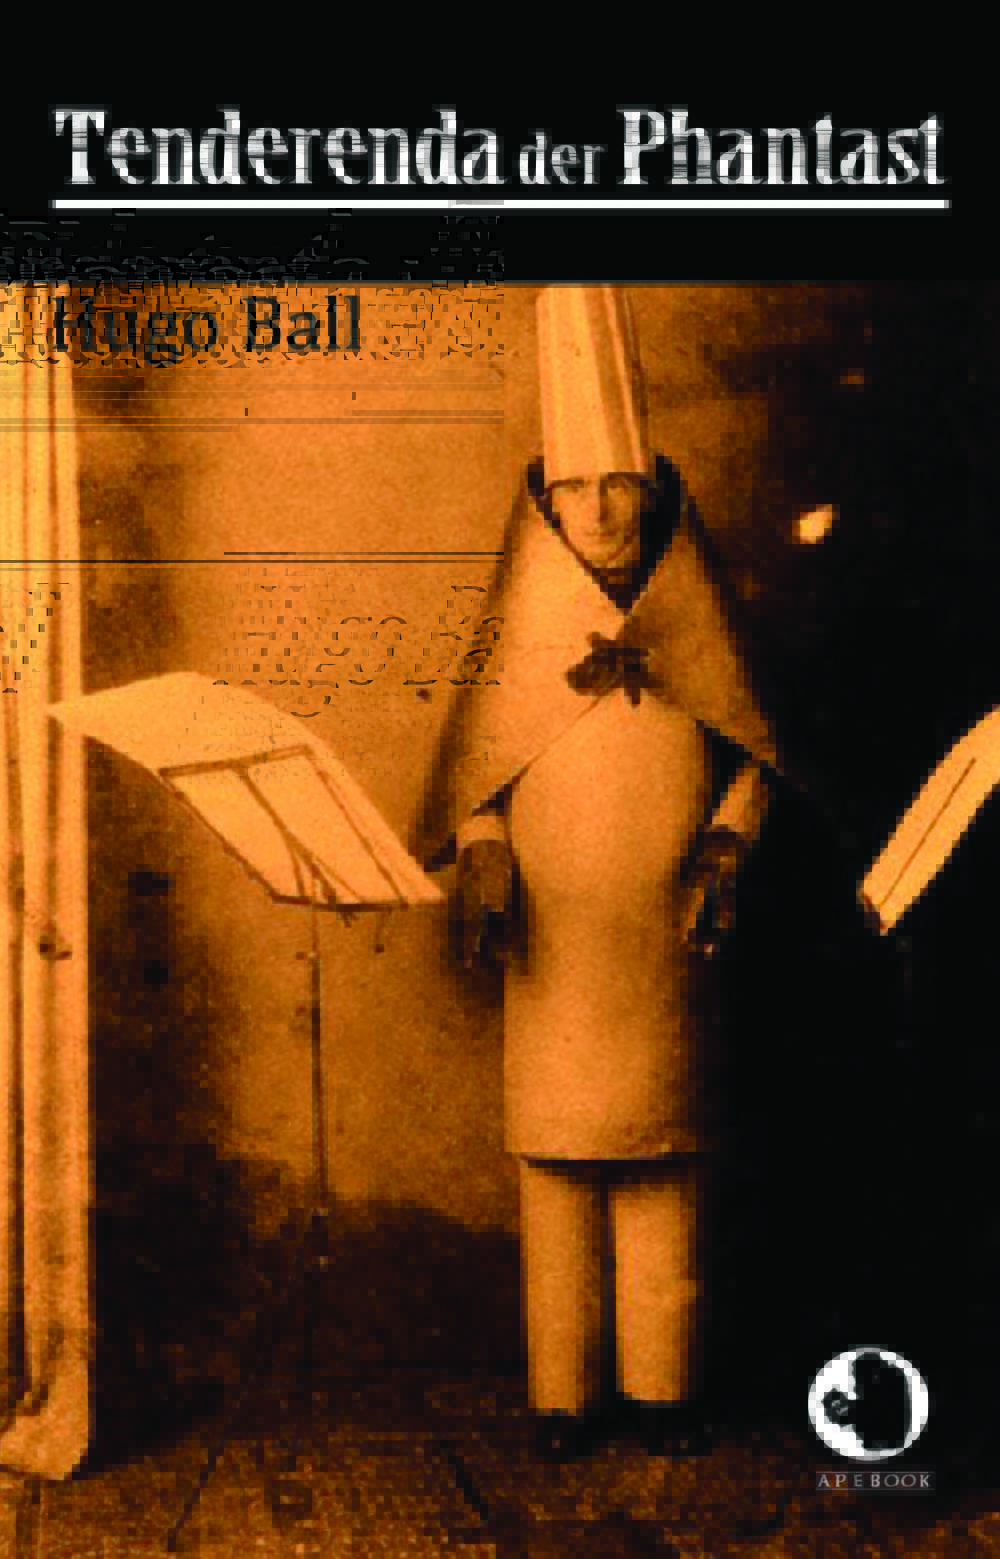 Hugo Ball: Tenderenda der Phantast